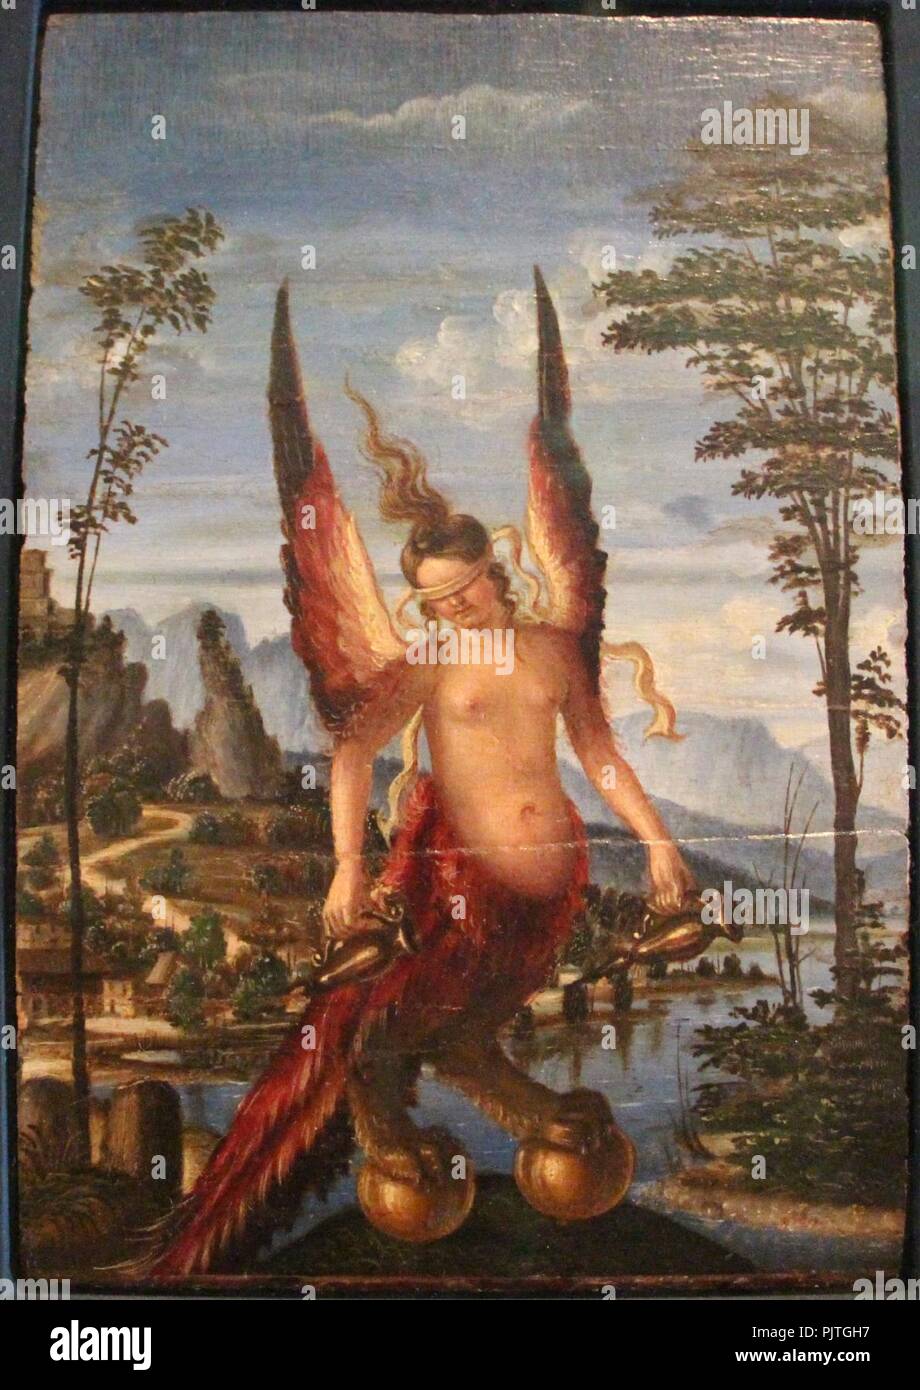 Andrea previtali e giovanni bellini, allegorie, 1490 ca. 02. Stock Photo